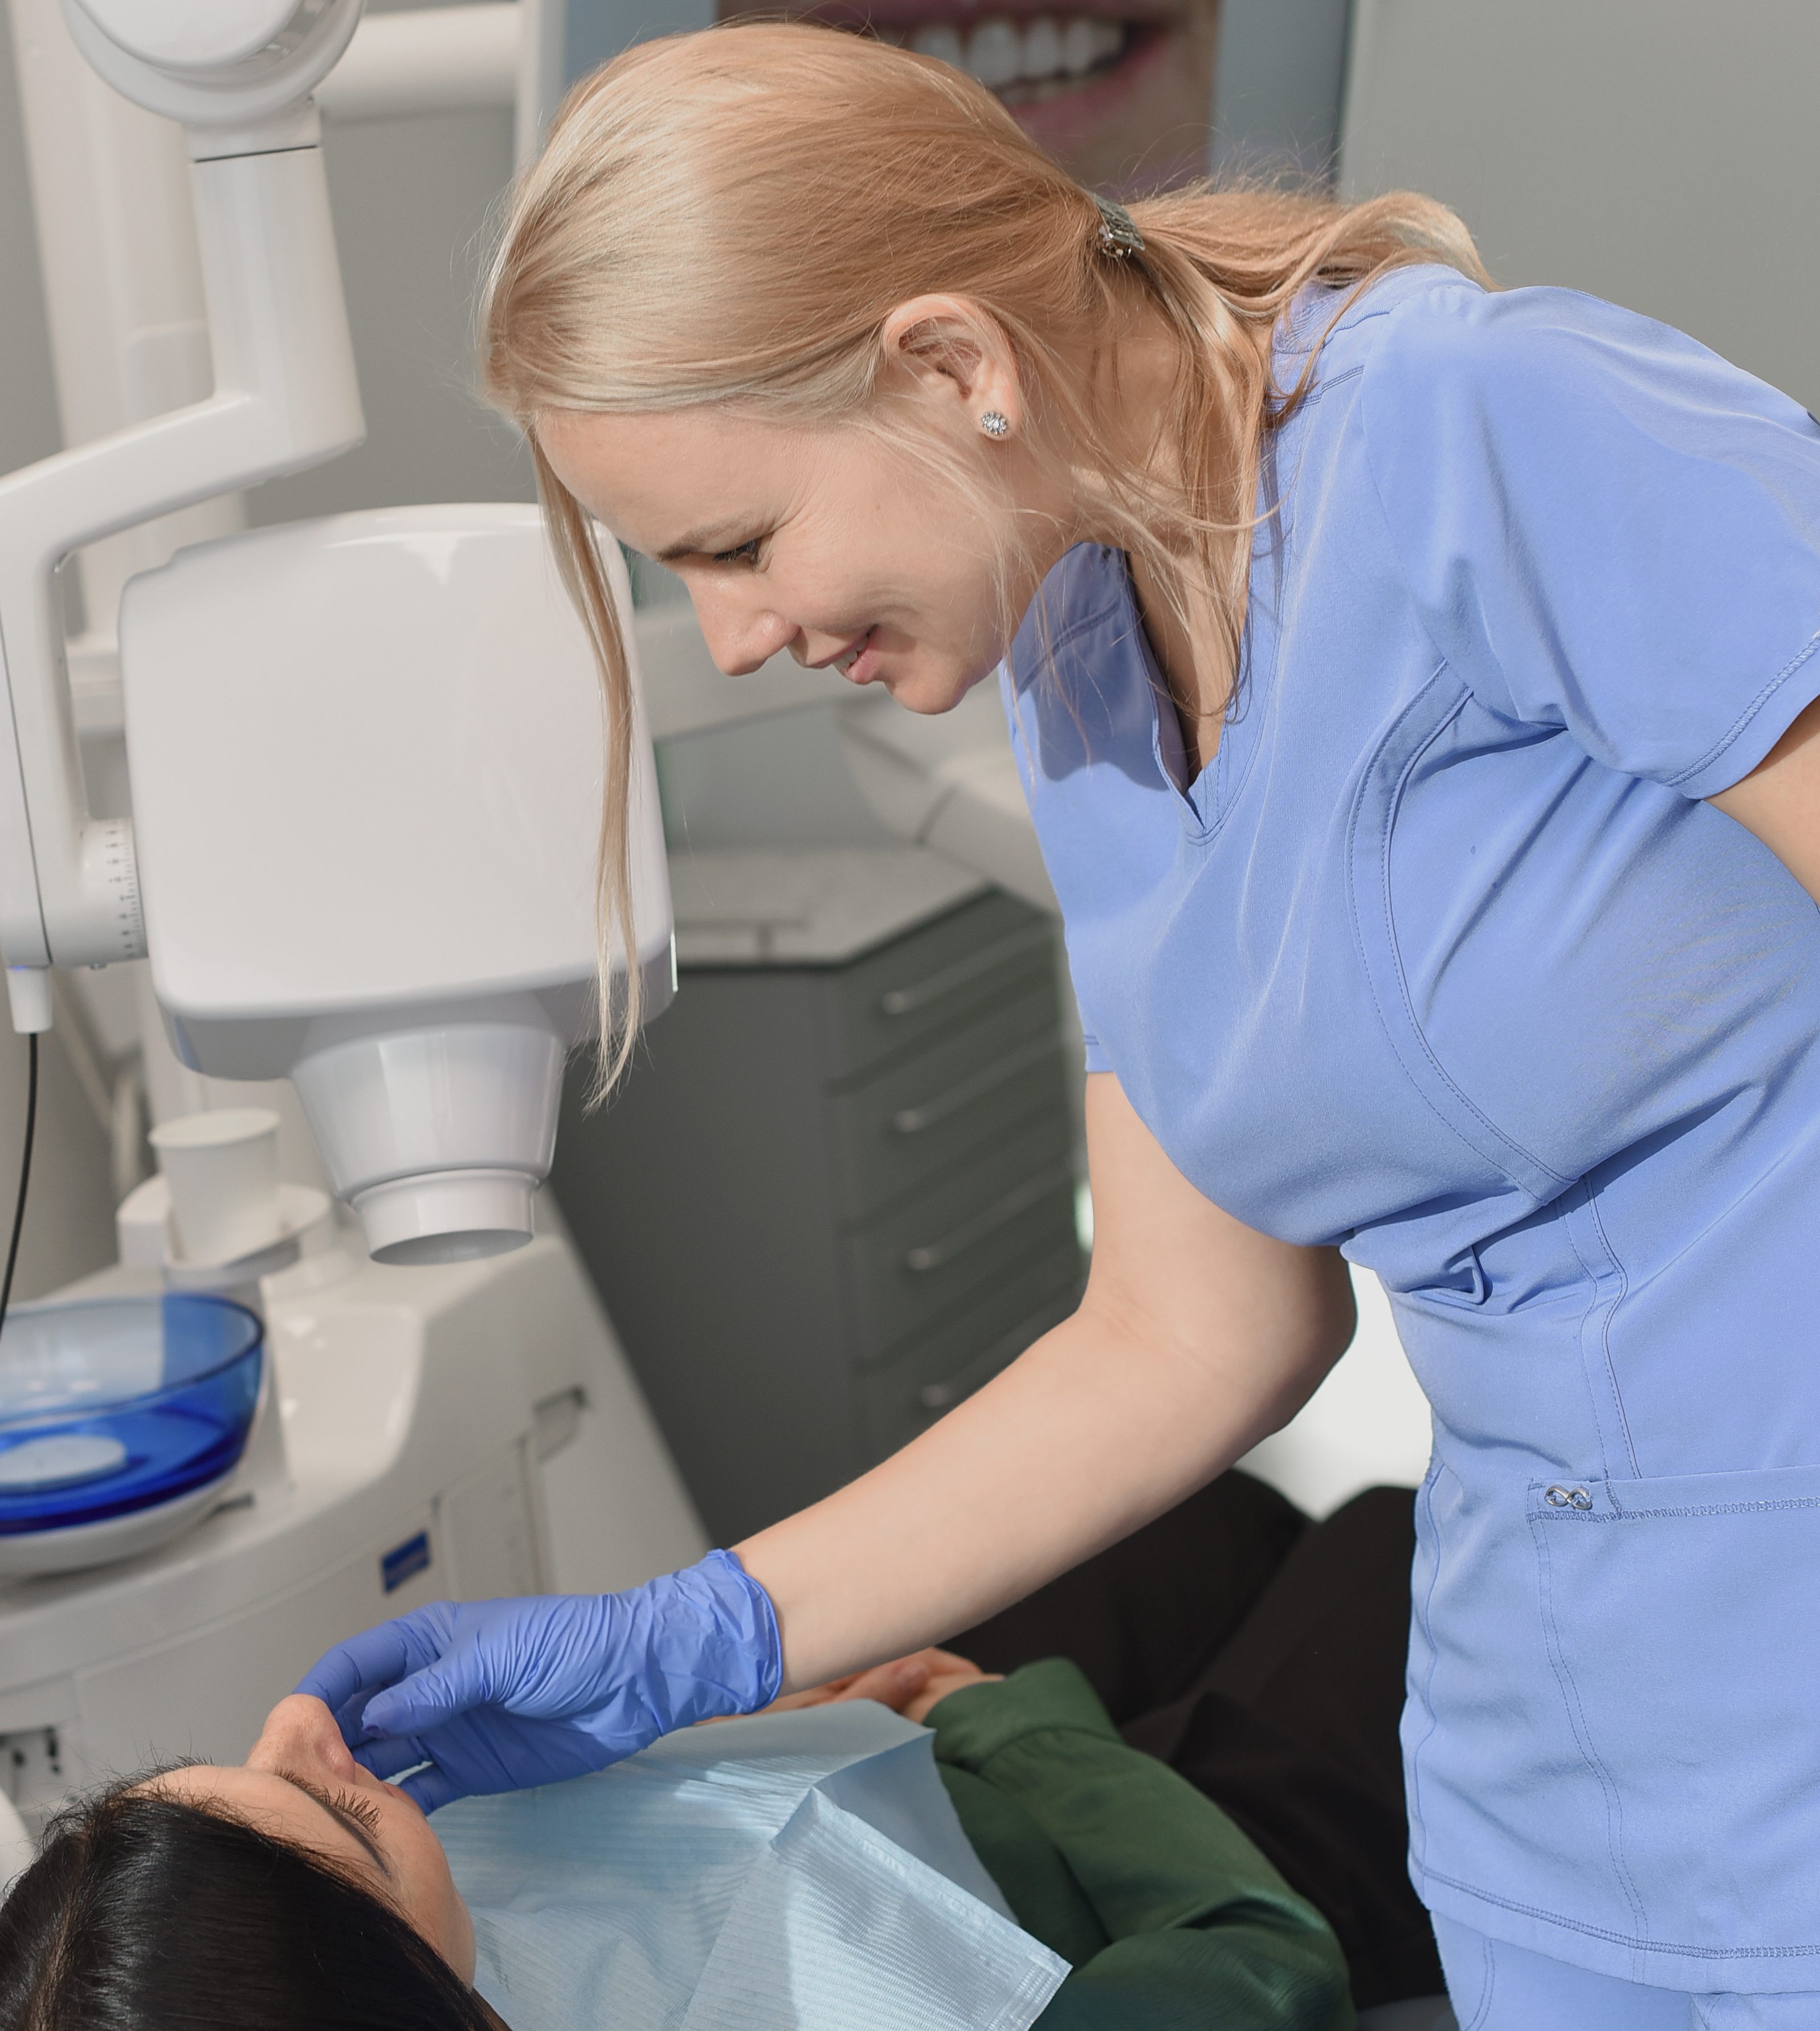 Odontologė Algimantė Lošytė Jančė apžiūri pacientės dantis